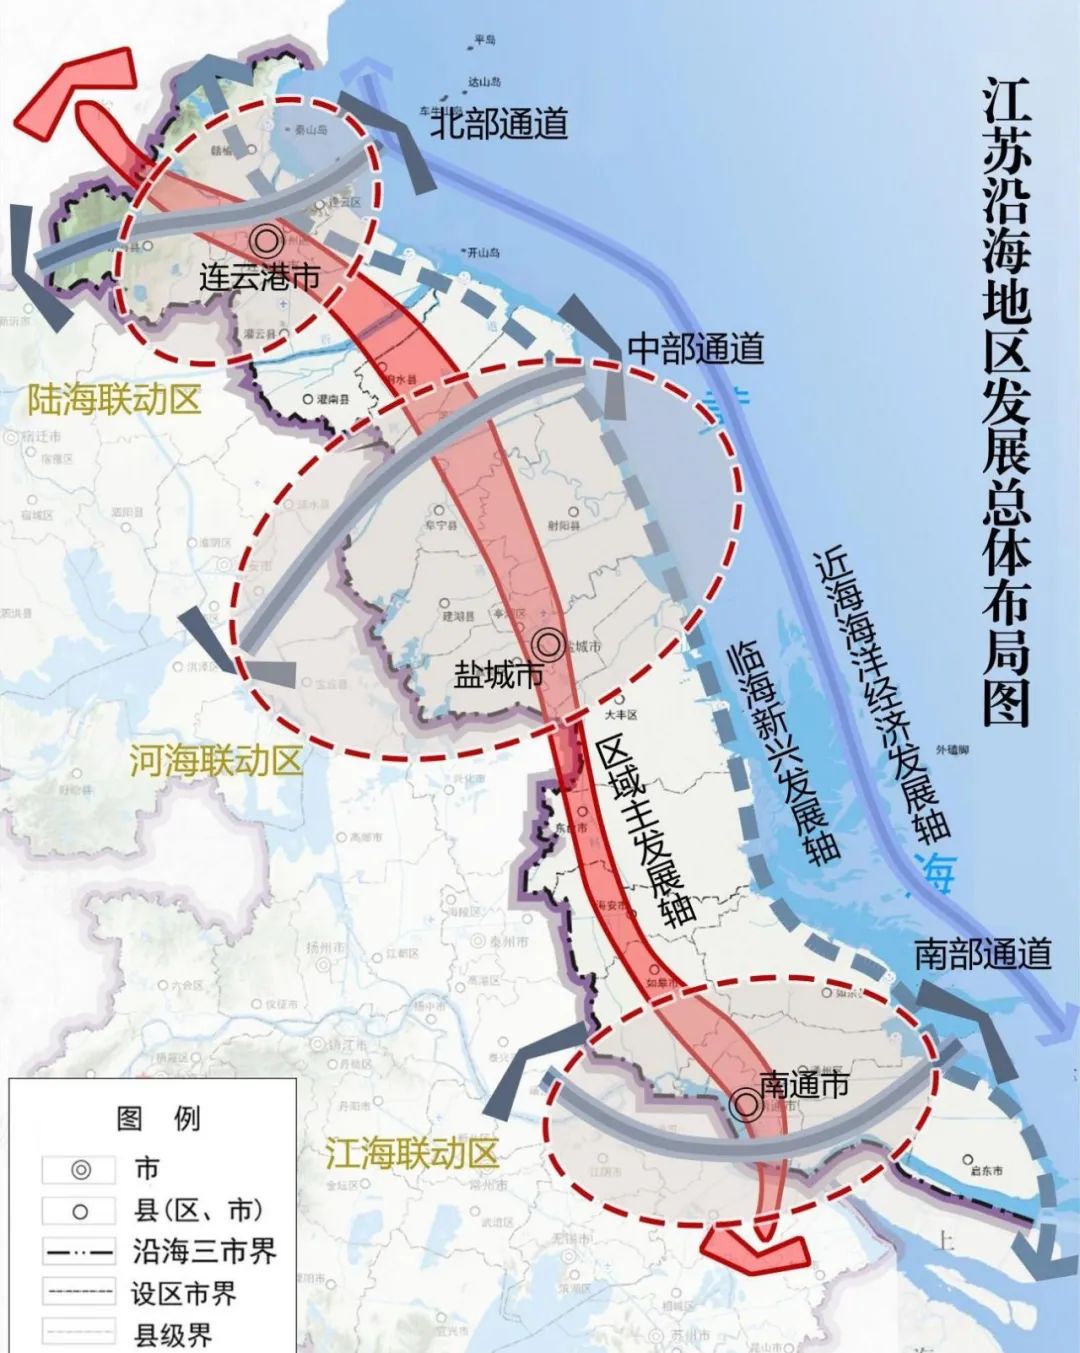 江苏沿海地区发展总体布局图 图/《江苏沿海地区发展规划（2021-2025年）》